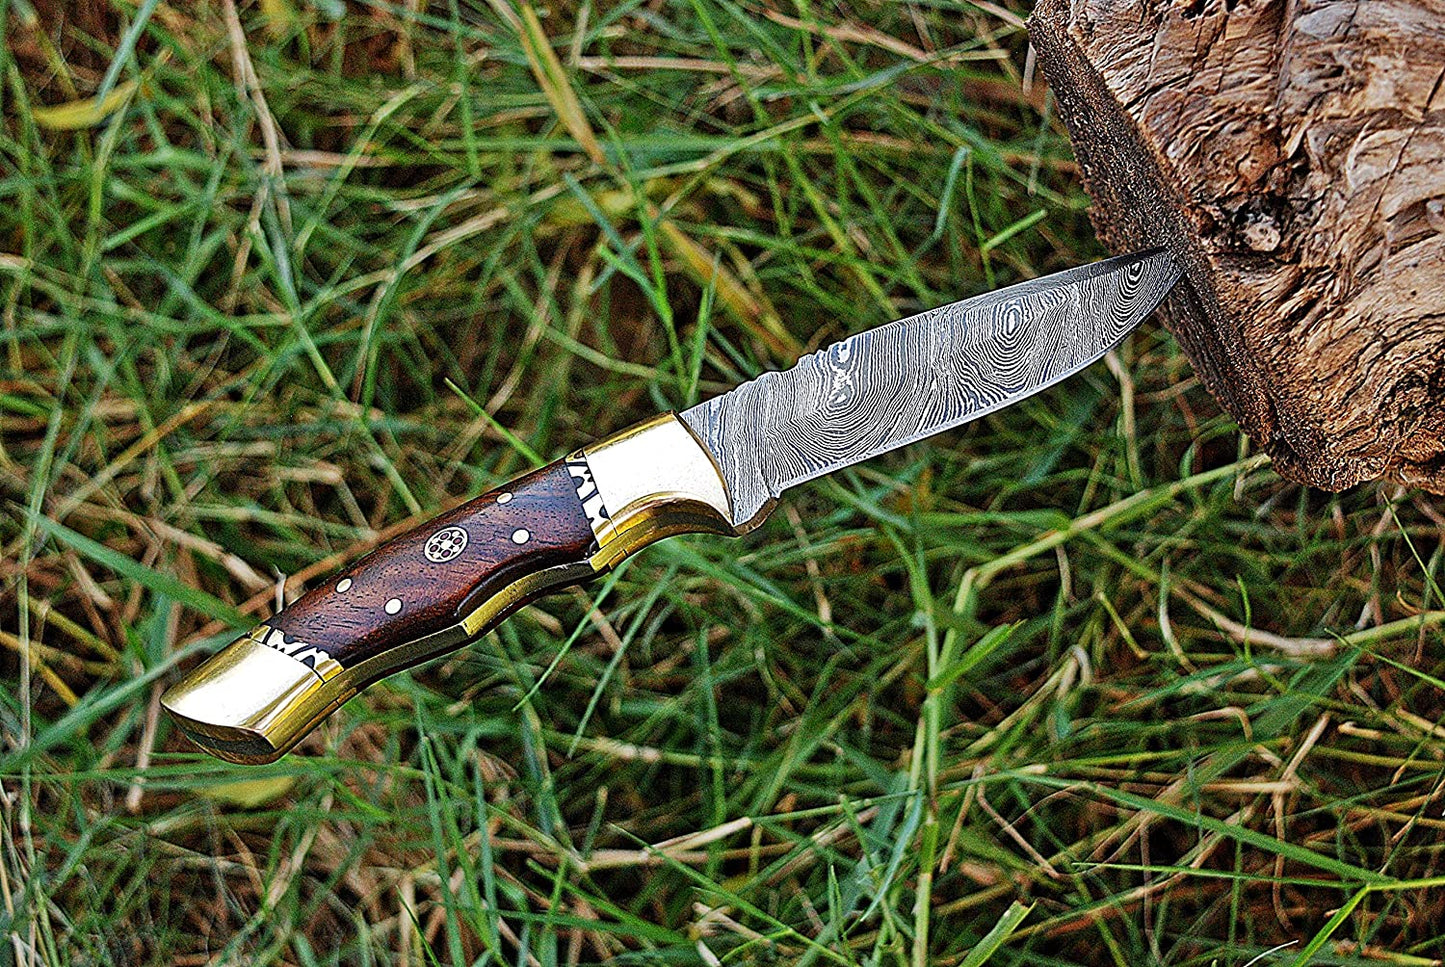 Shard Damascus Steel Knife Handmade Hunting Knife Skinner Knife Rose Wood Handle